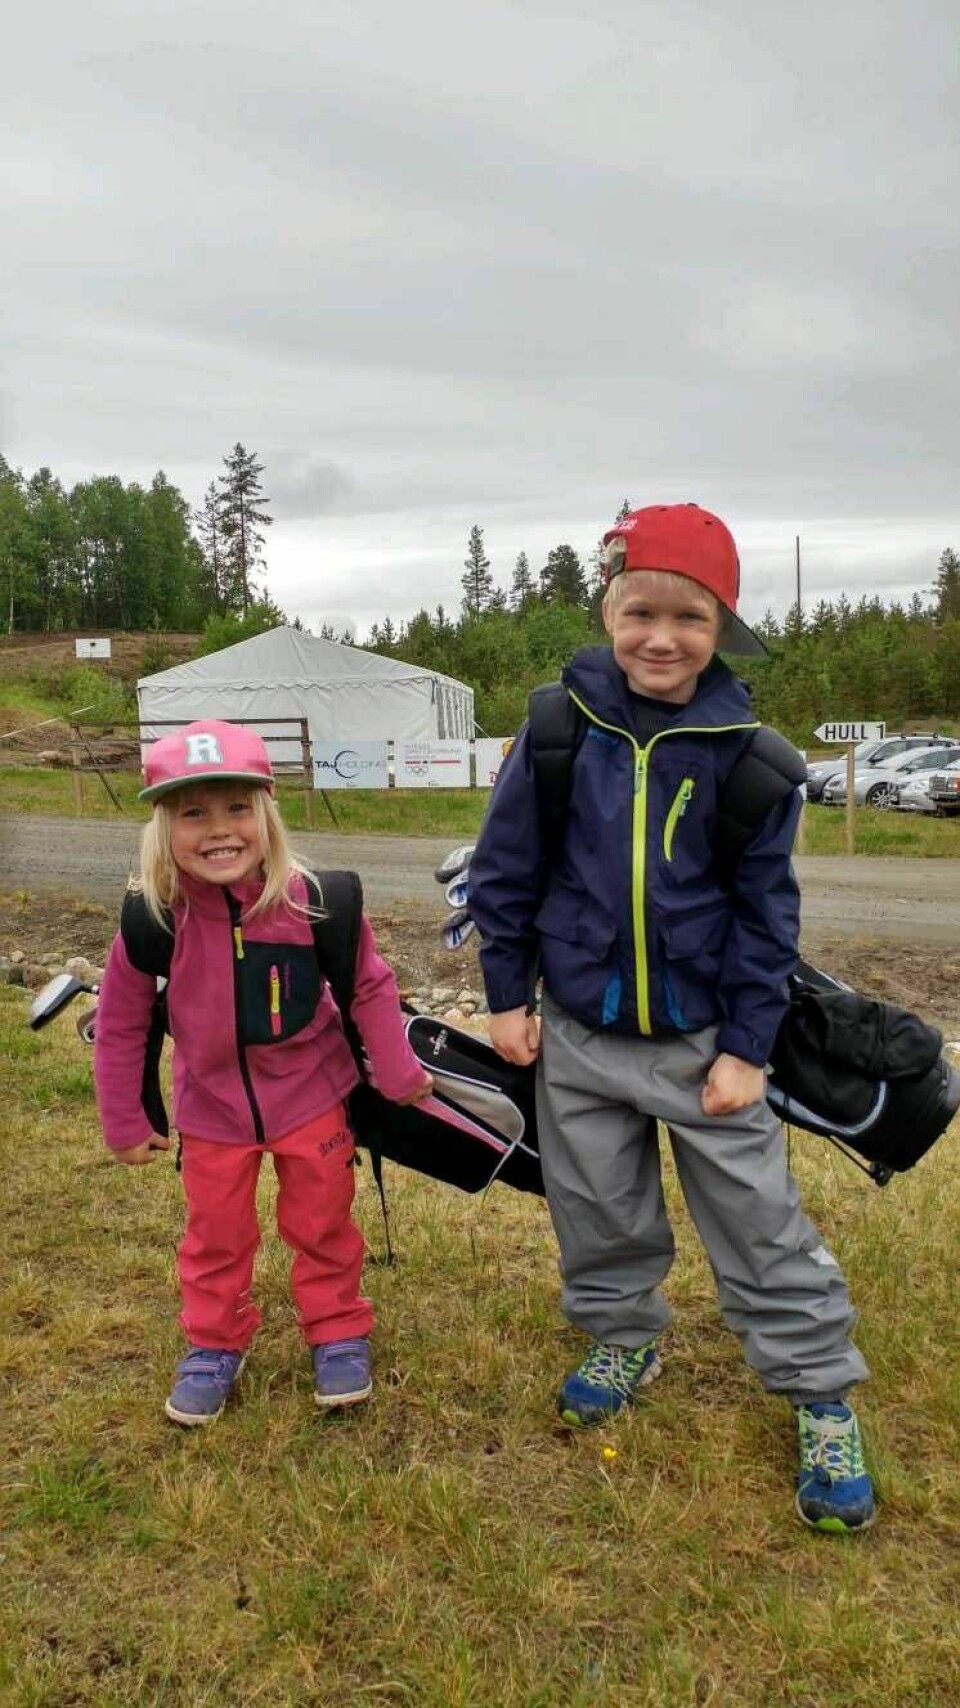 KURSKLARE: Mie Ingelin og Elias er mer enn klare for å starte med barnegolf på Finnkroken-banen. Foto: Privat